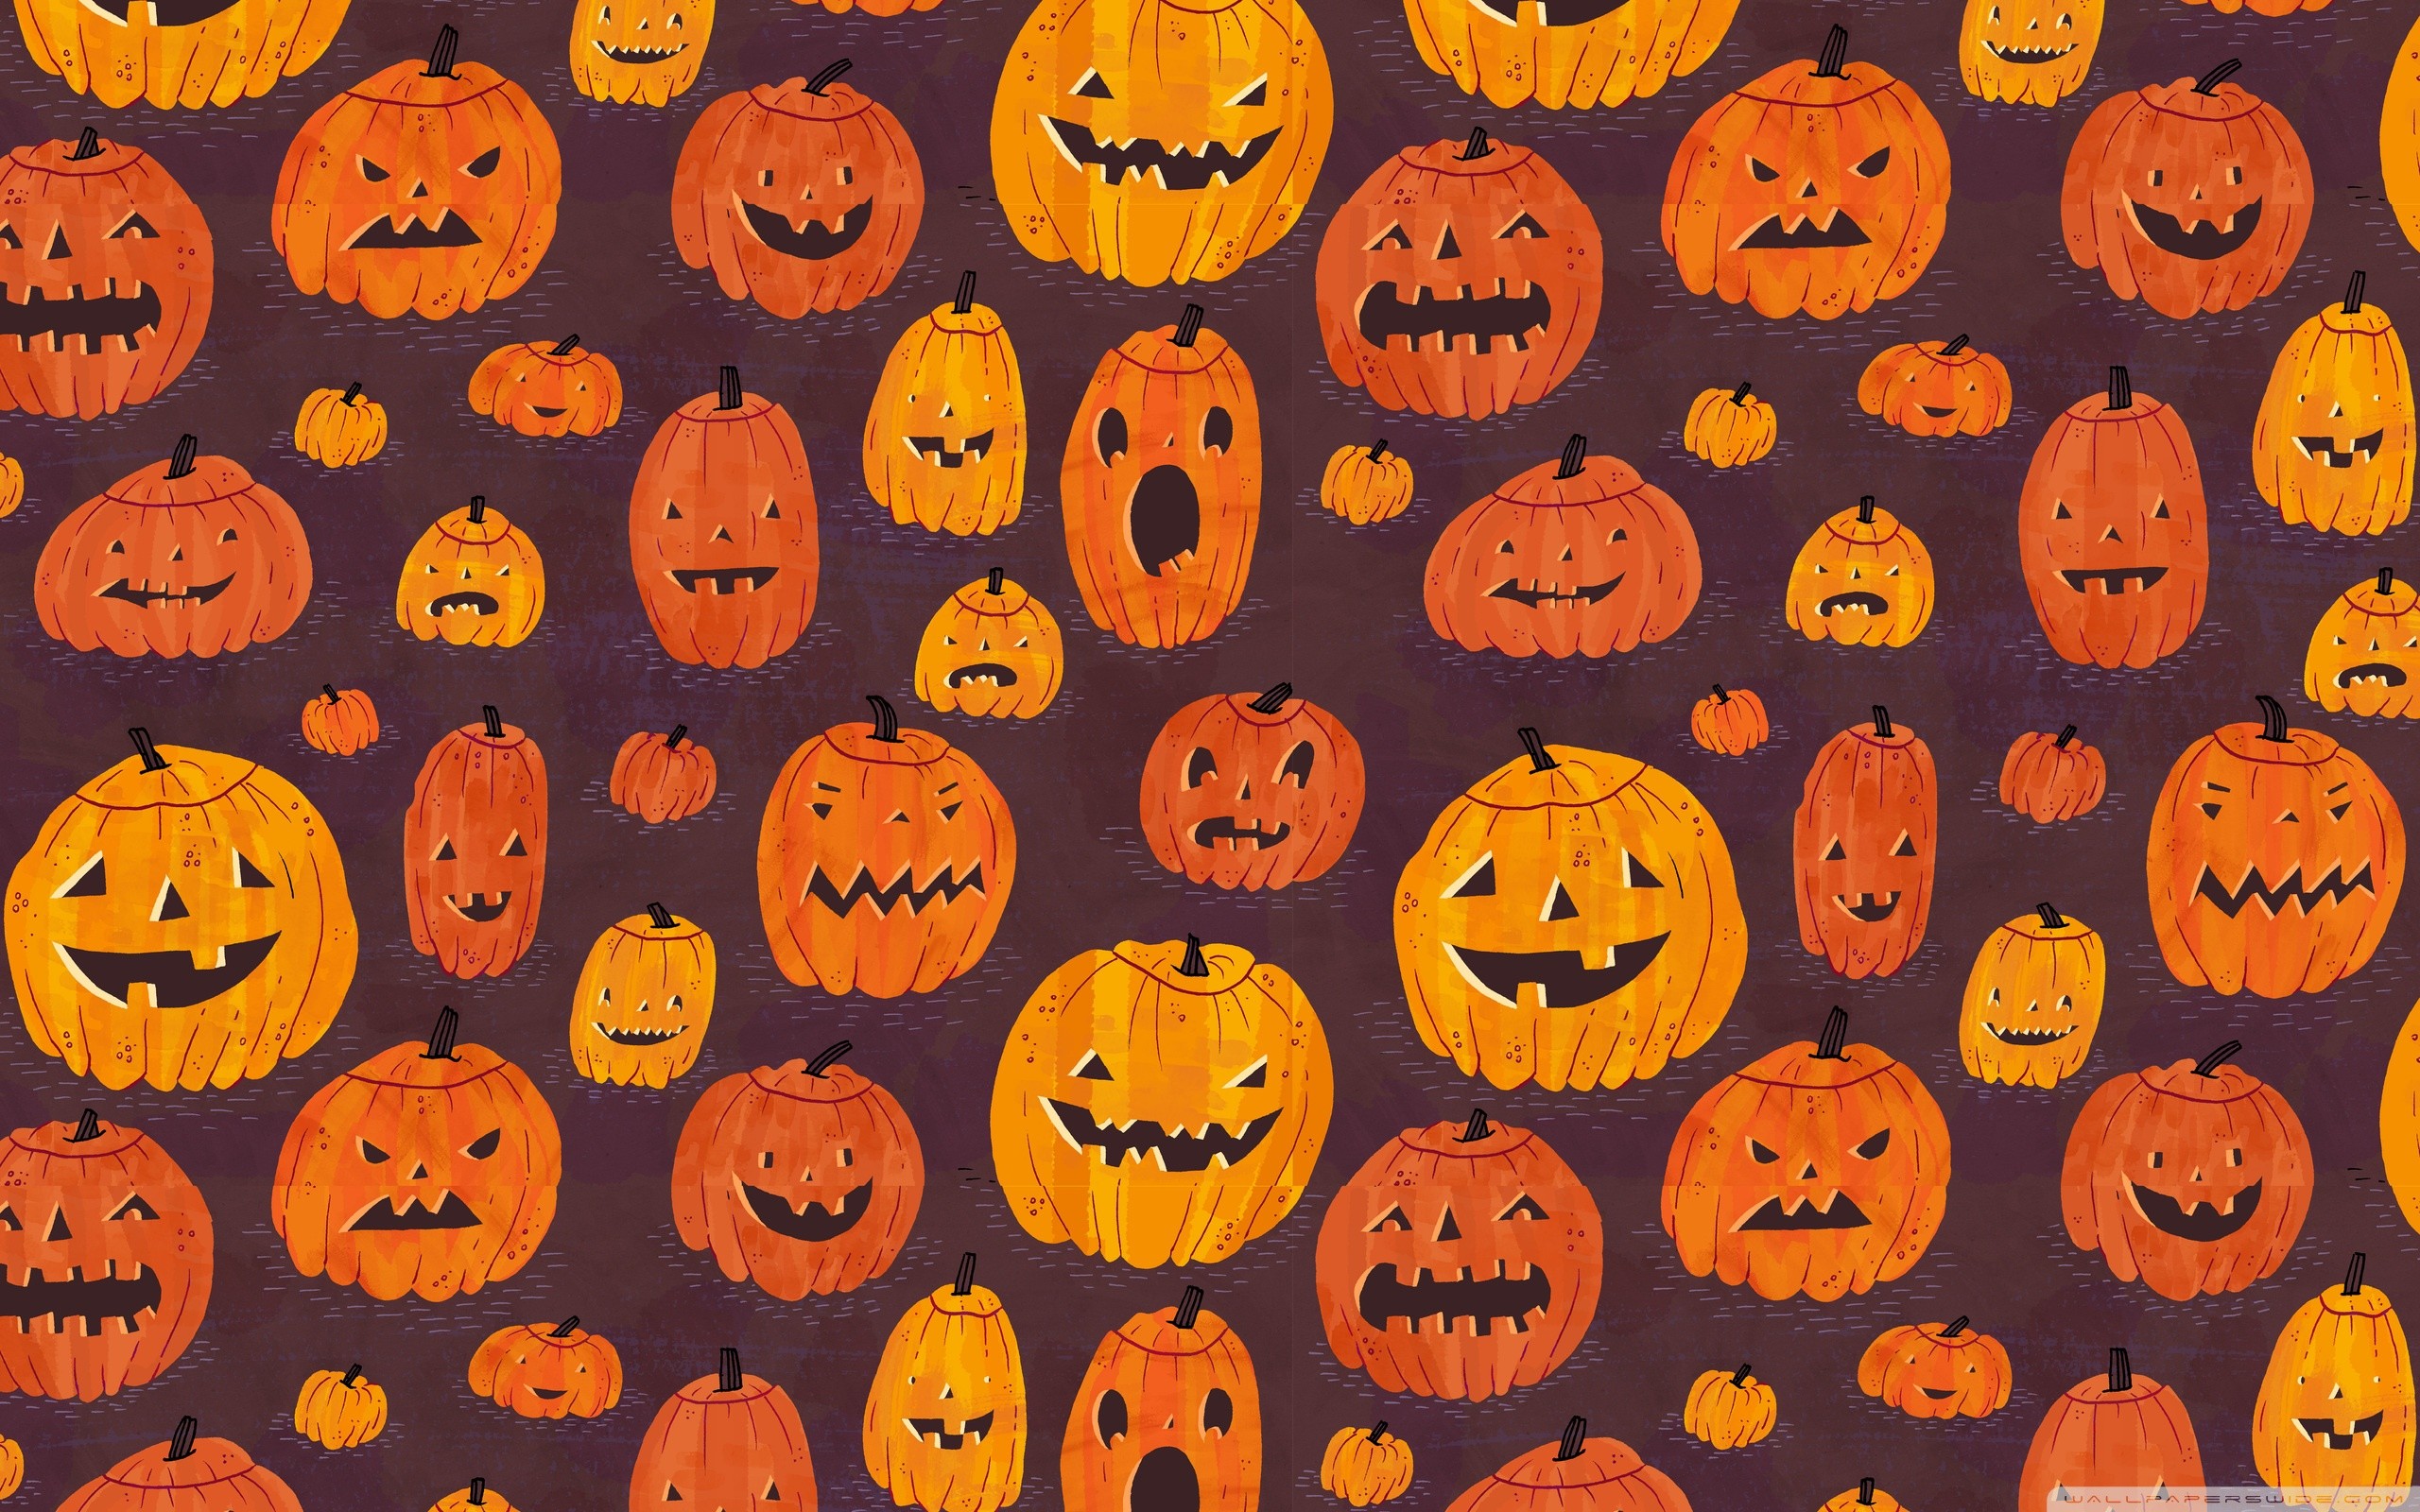 2560x1600 Halloween Pumpkins Pattern HD desktop wallpaper : High Definition ...  Halloween Pumpkins Pattern HD Desktop Wallpaper High Definition